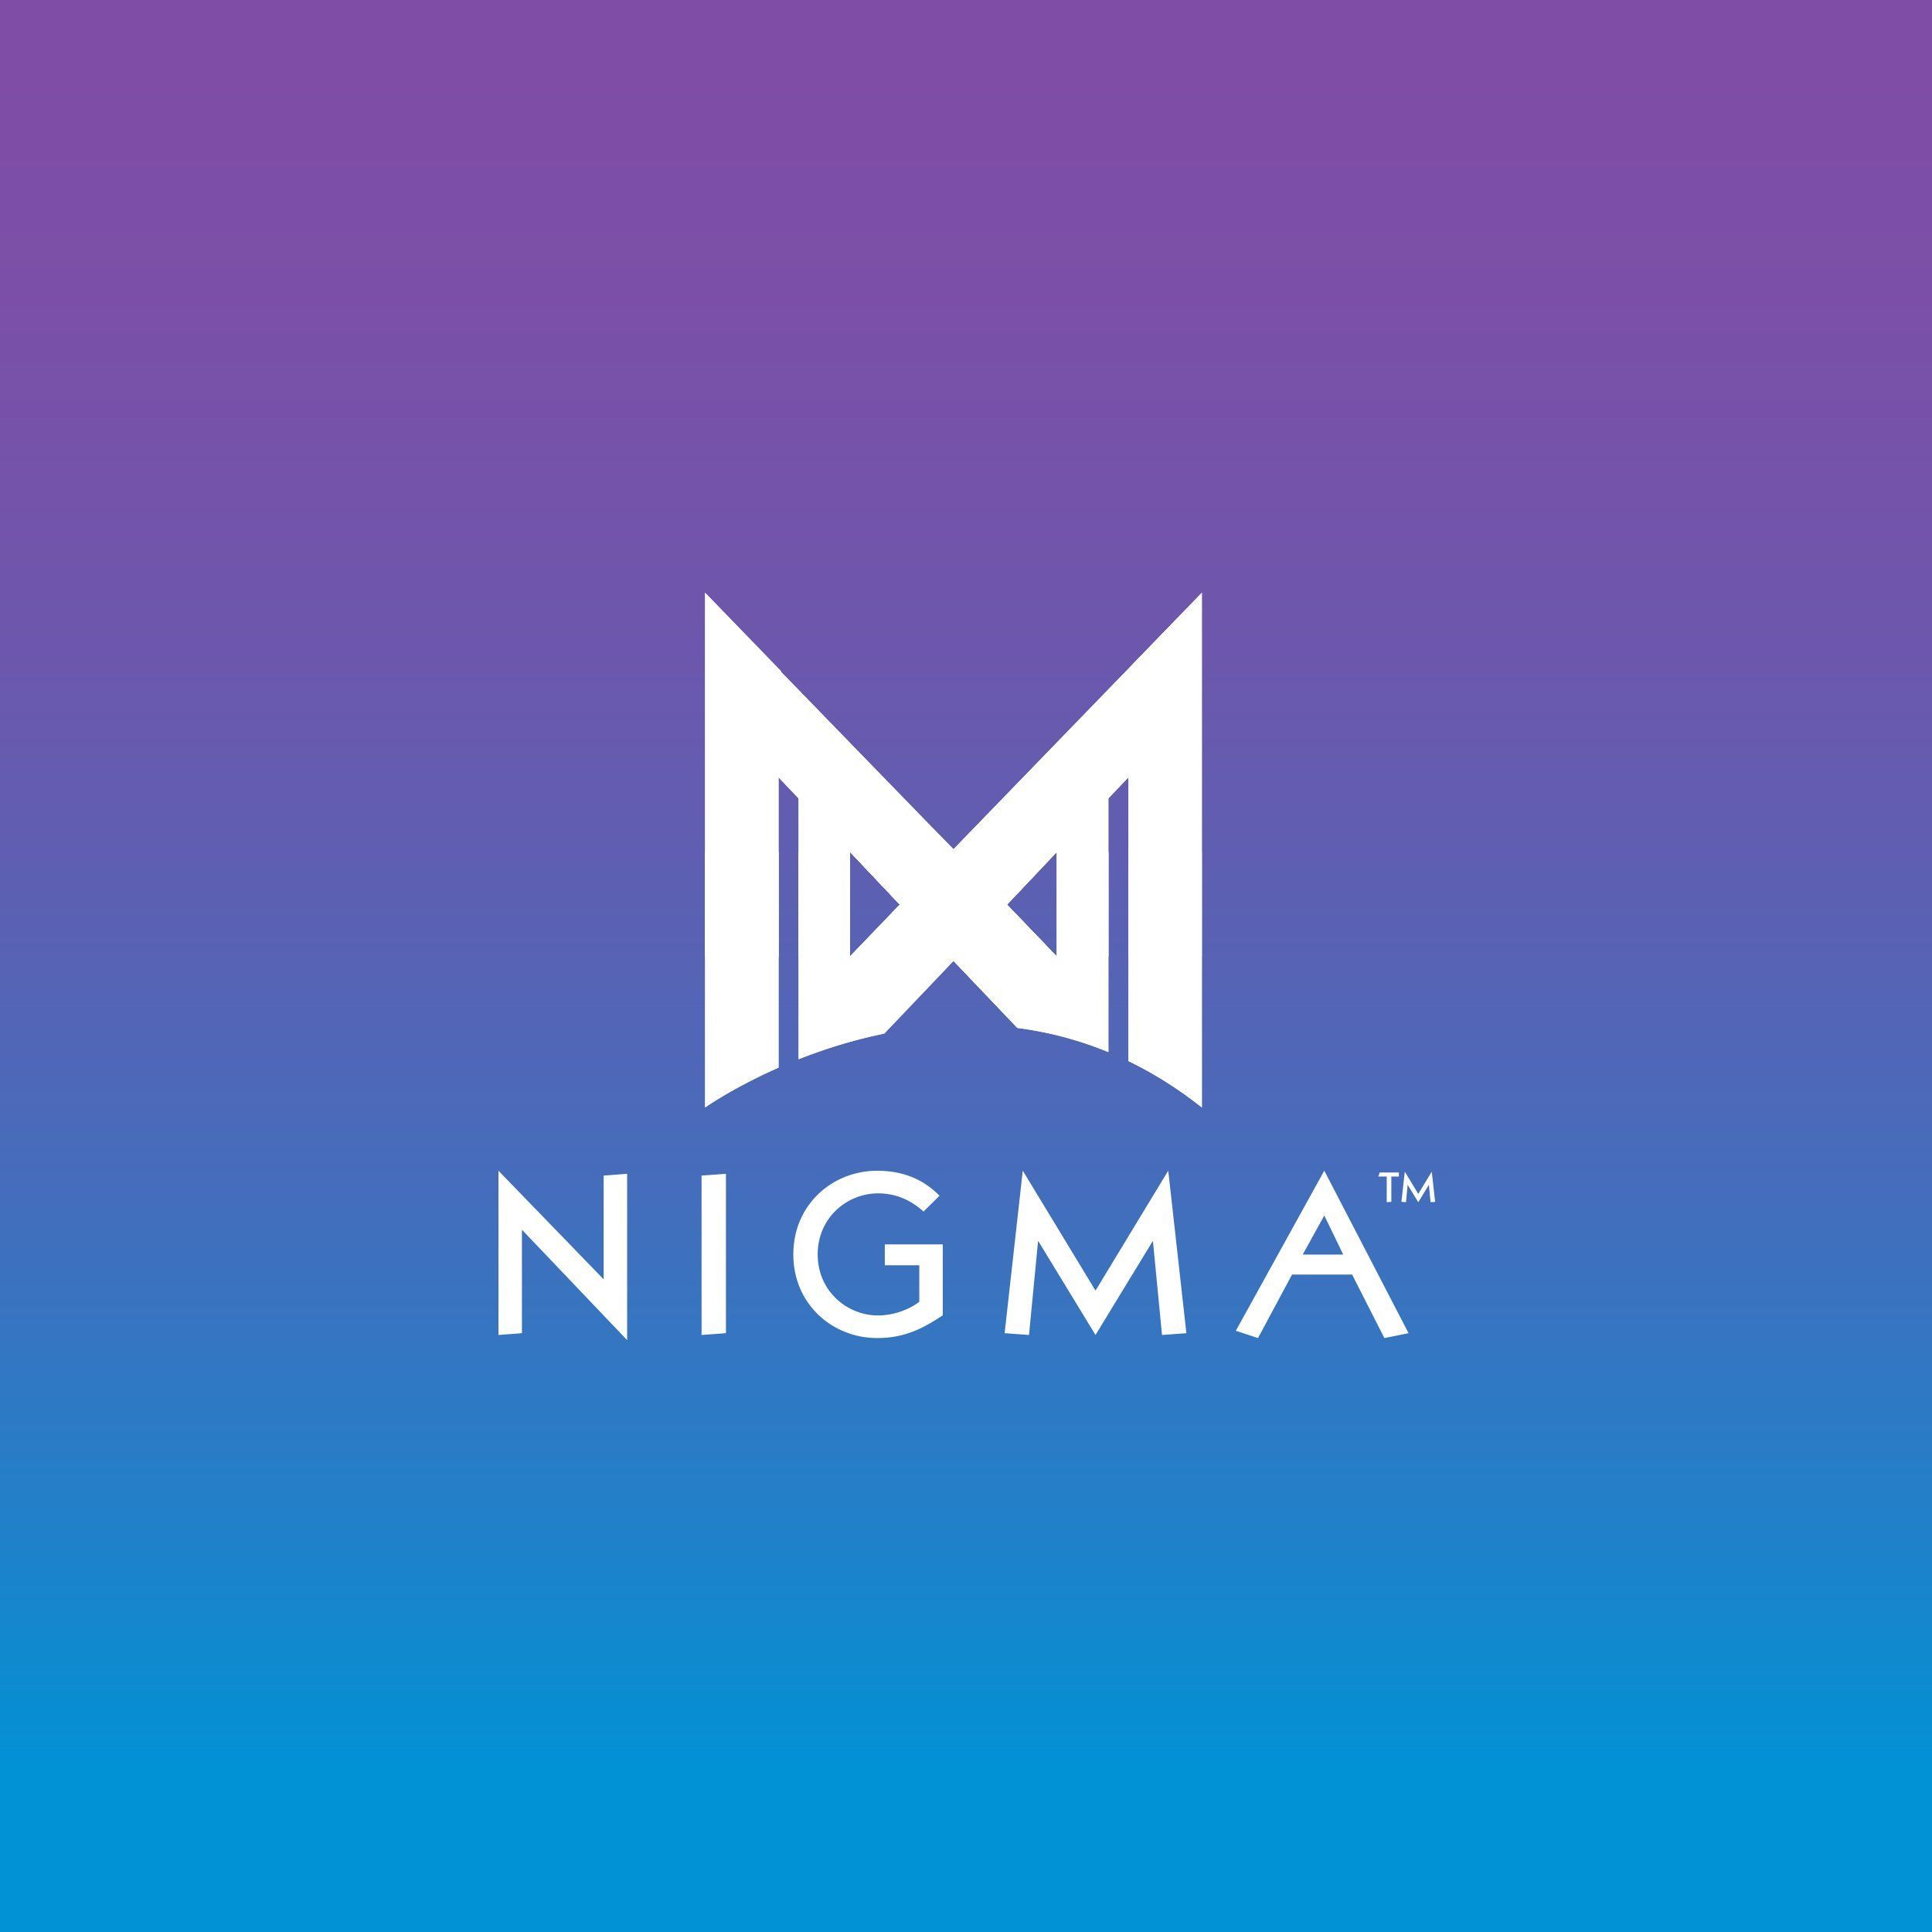 Team Tickles обыграла Nigma Galaxy в рамках первого дивизиона Dota Pro Circuit 2021/2022